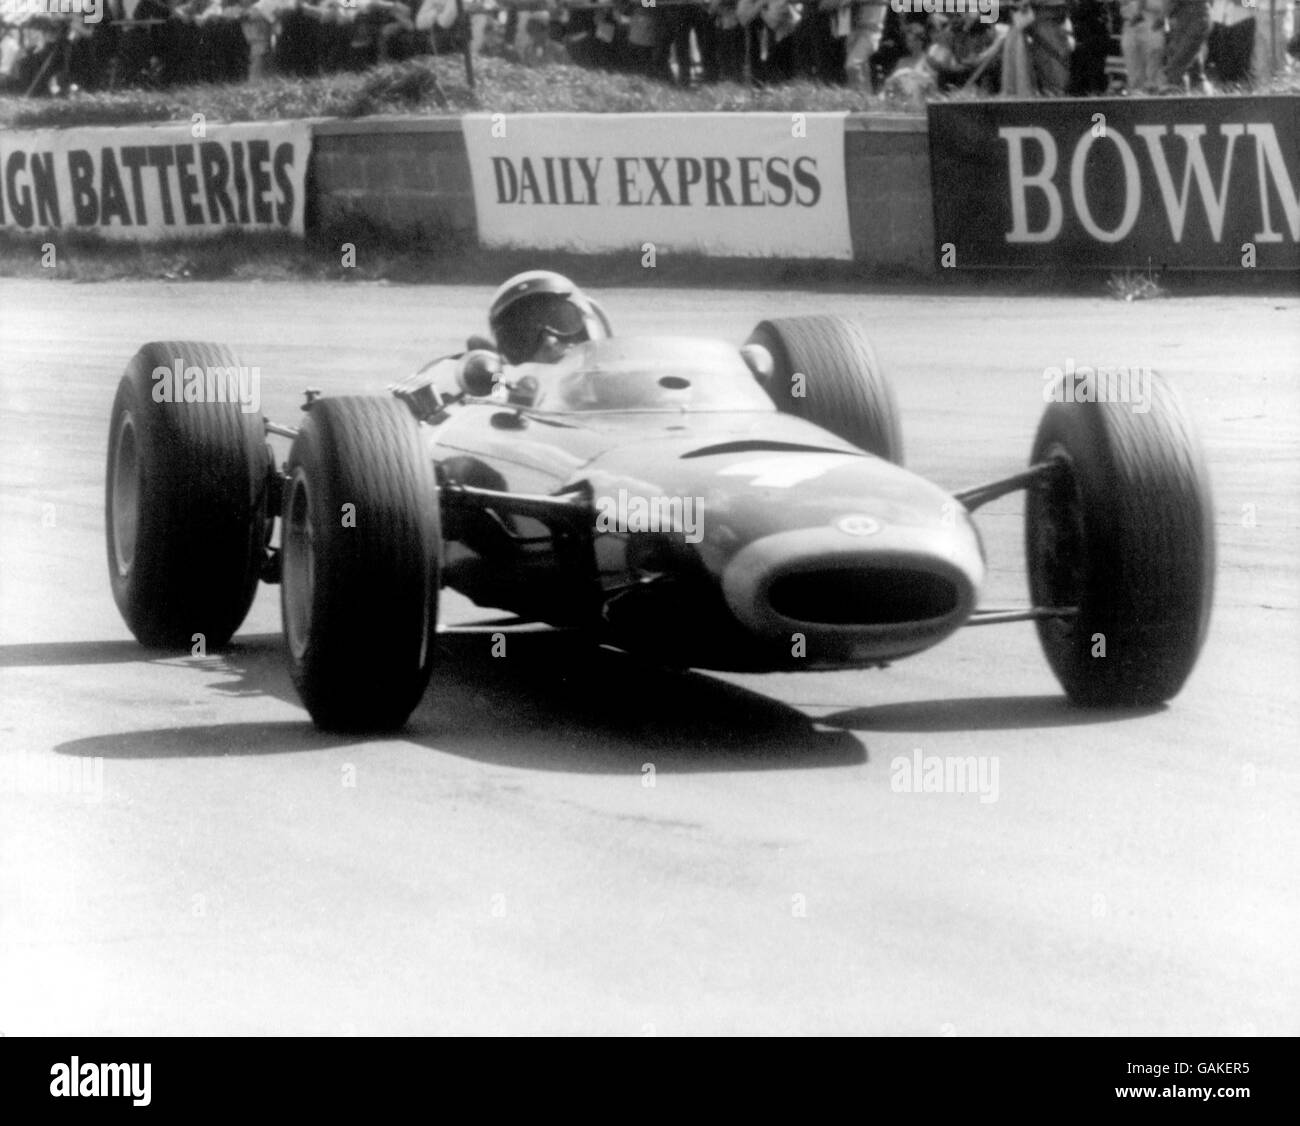 Motorsport - Daily Express Trophy - Silverstone. Rennsieger Jackie Stewart in Aktion in seinem BRM Stockfoto